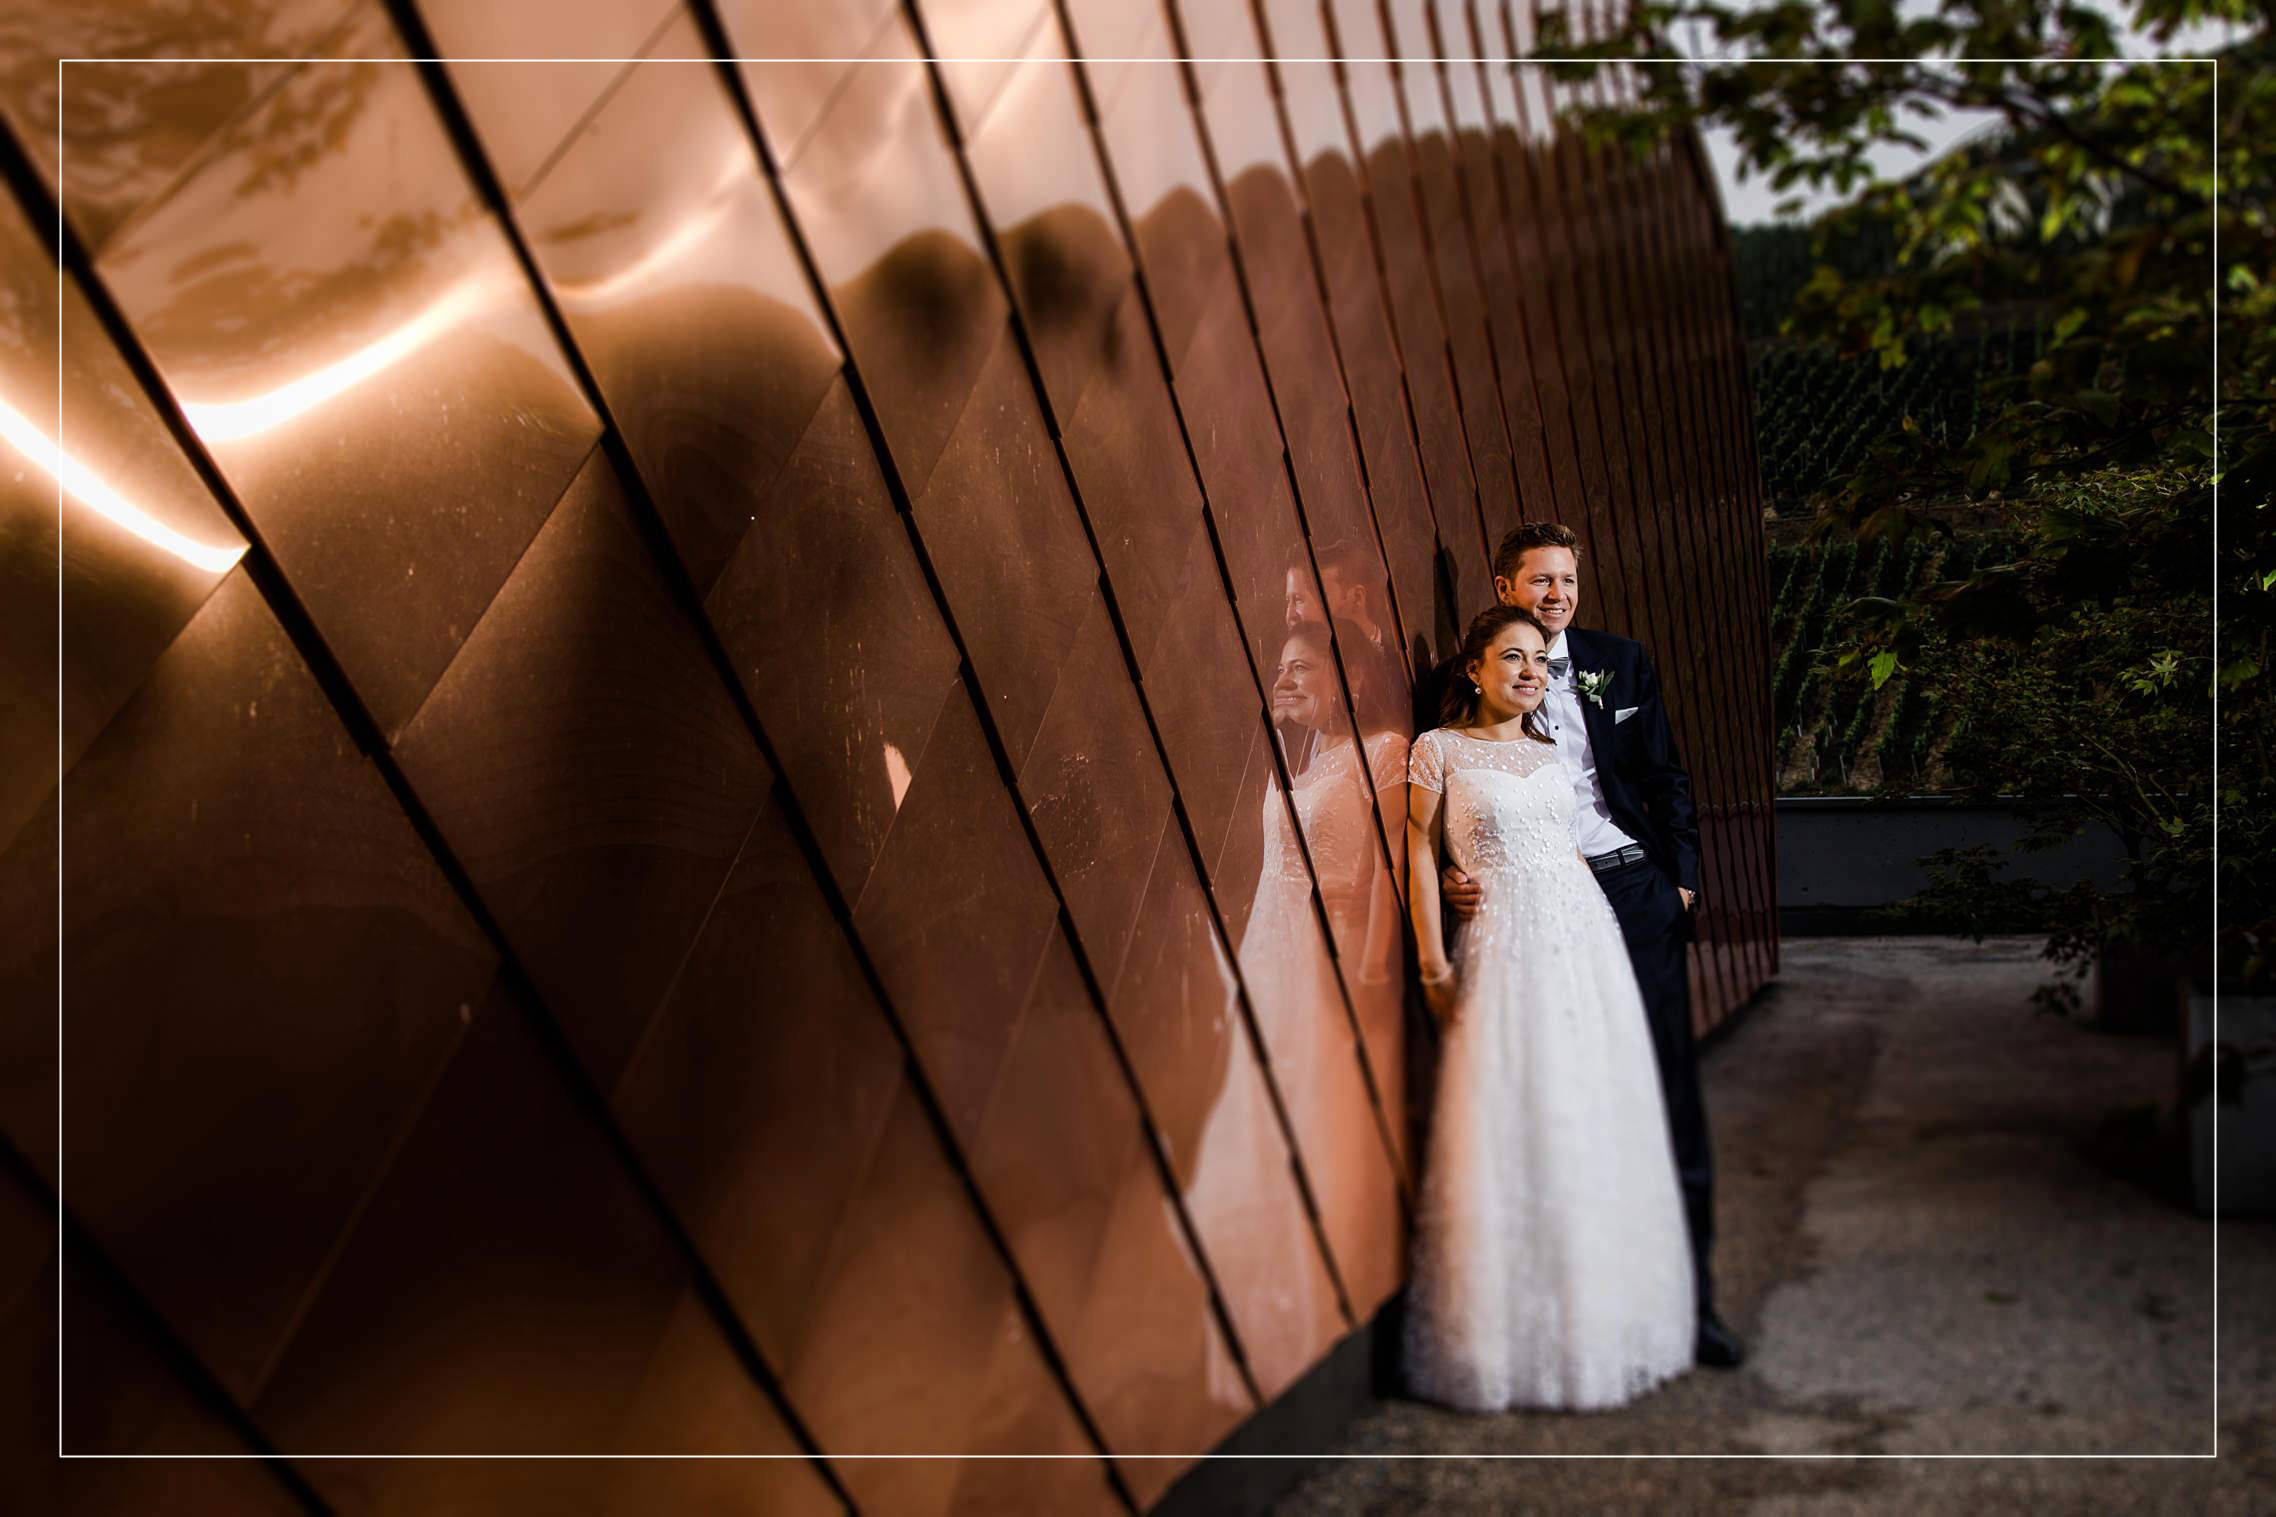 Titelbild zum Blogbeitrag über eine wunderschöne Hochzeit im Gut Hermannsberg - das Brautpaar posiert vor einer Kupferwand.